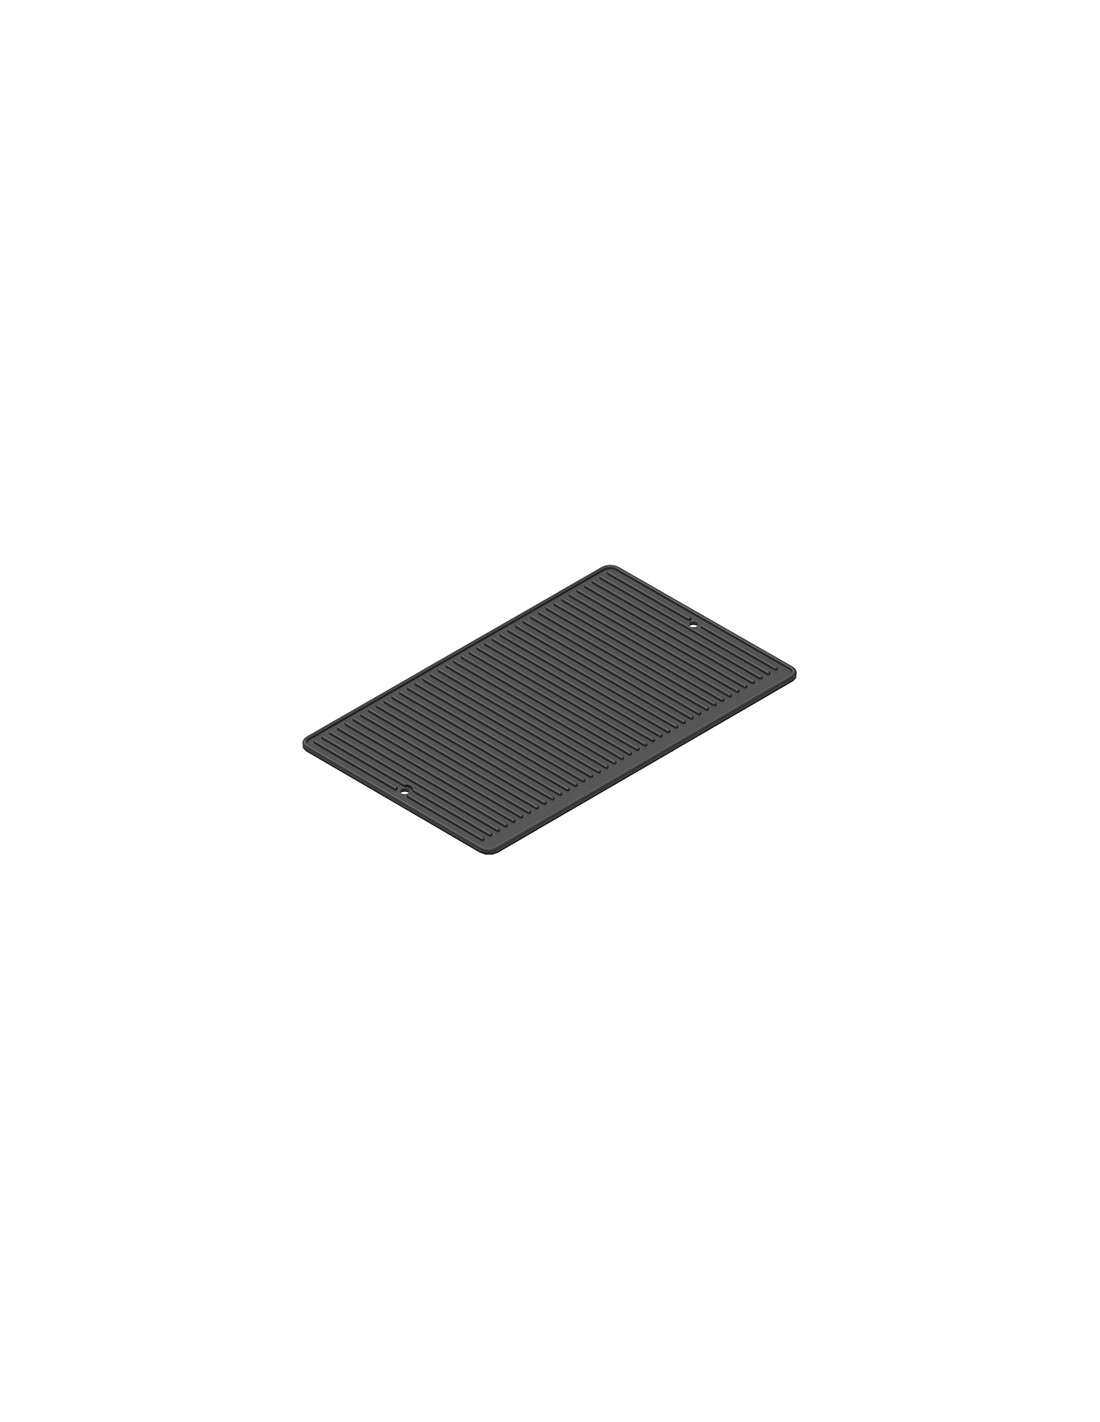 Placa rayada de aluminio con recubrimiento GN 1/1 - cm 53 x 32.5 x 2 h